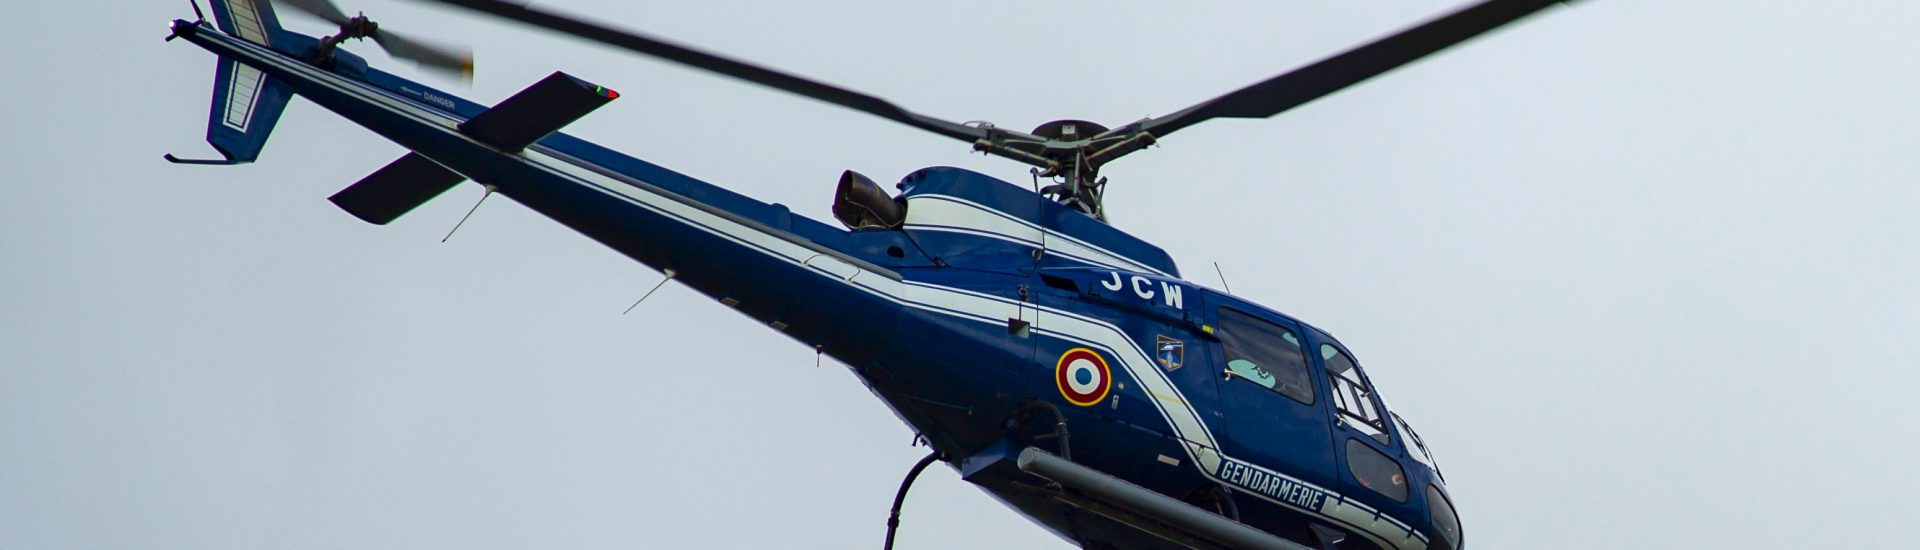 AS350B Gendarmerie Nationale F-MJCW